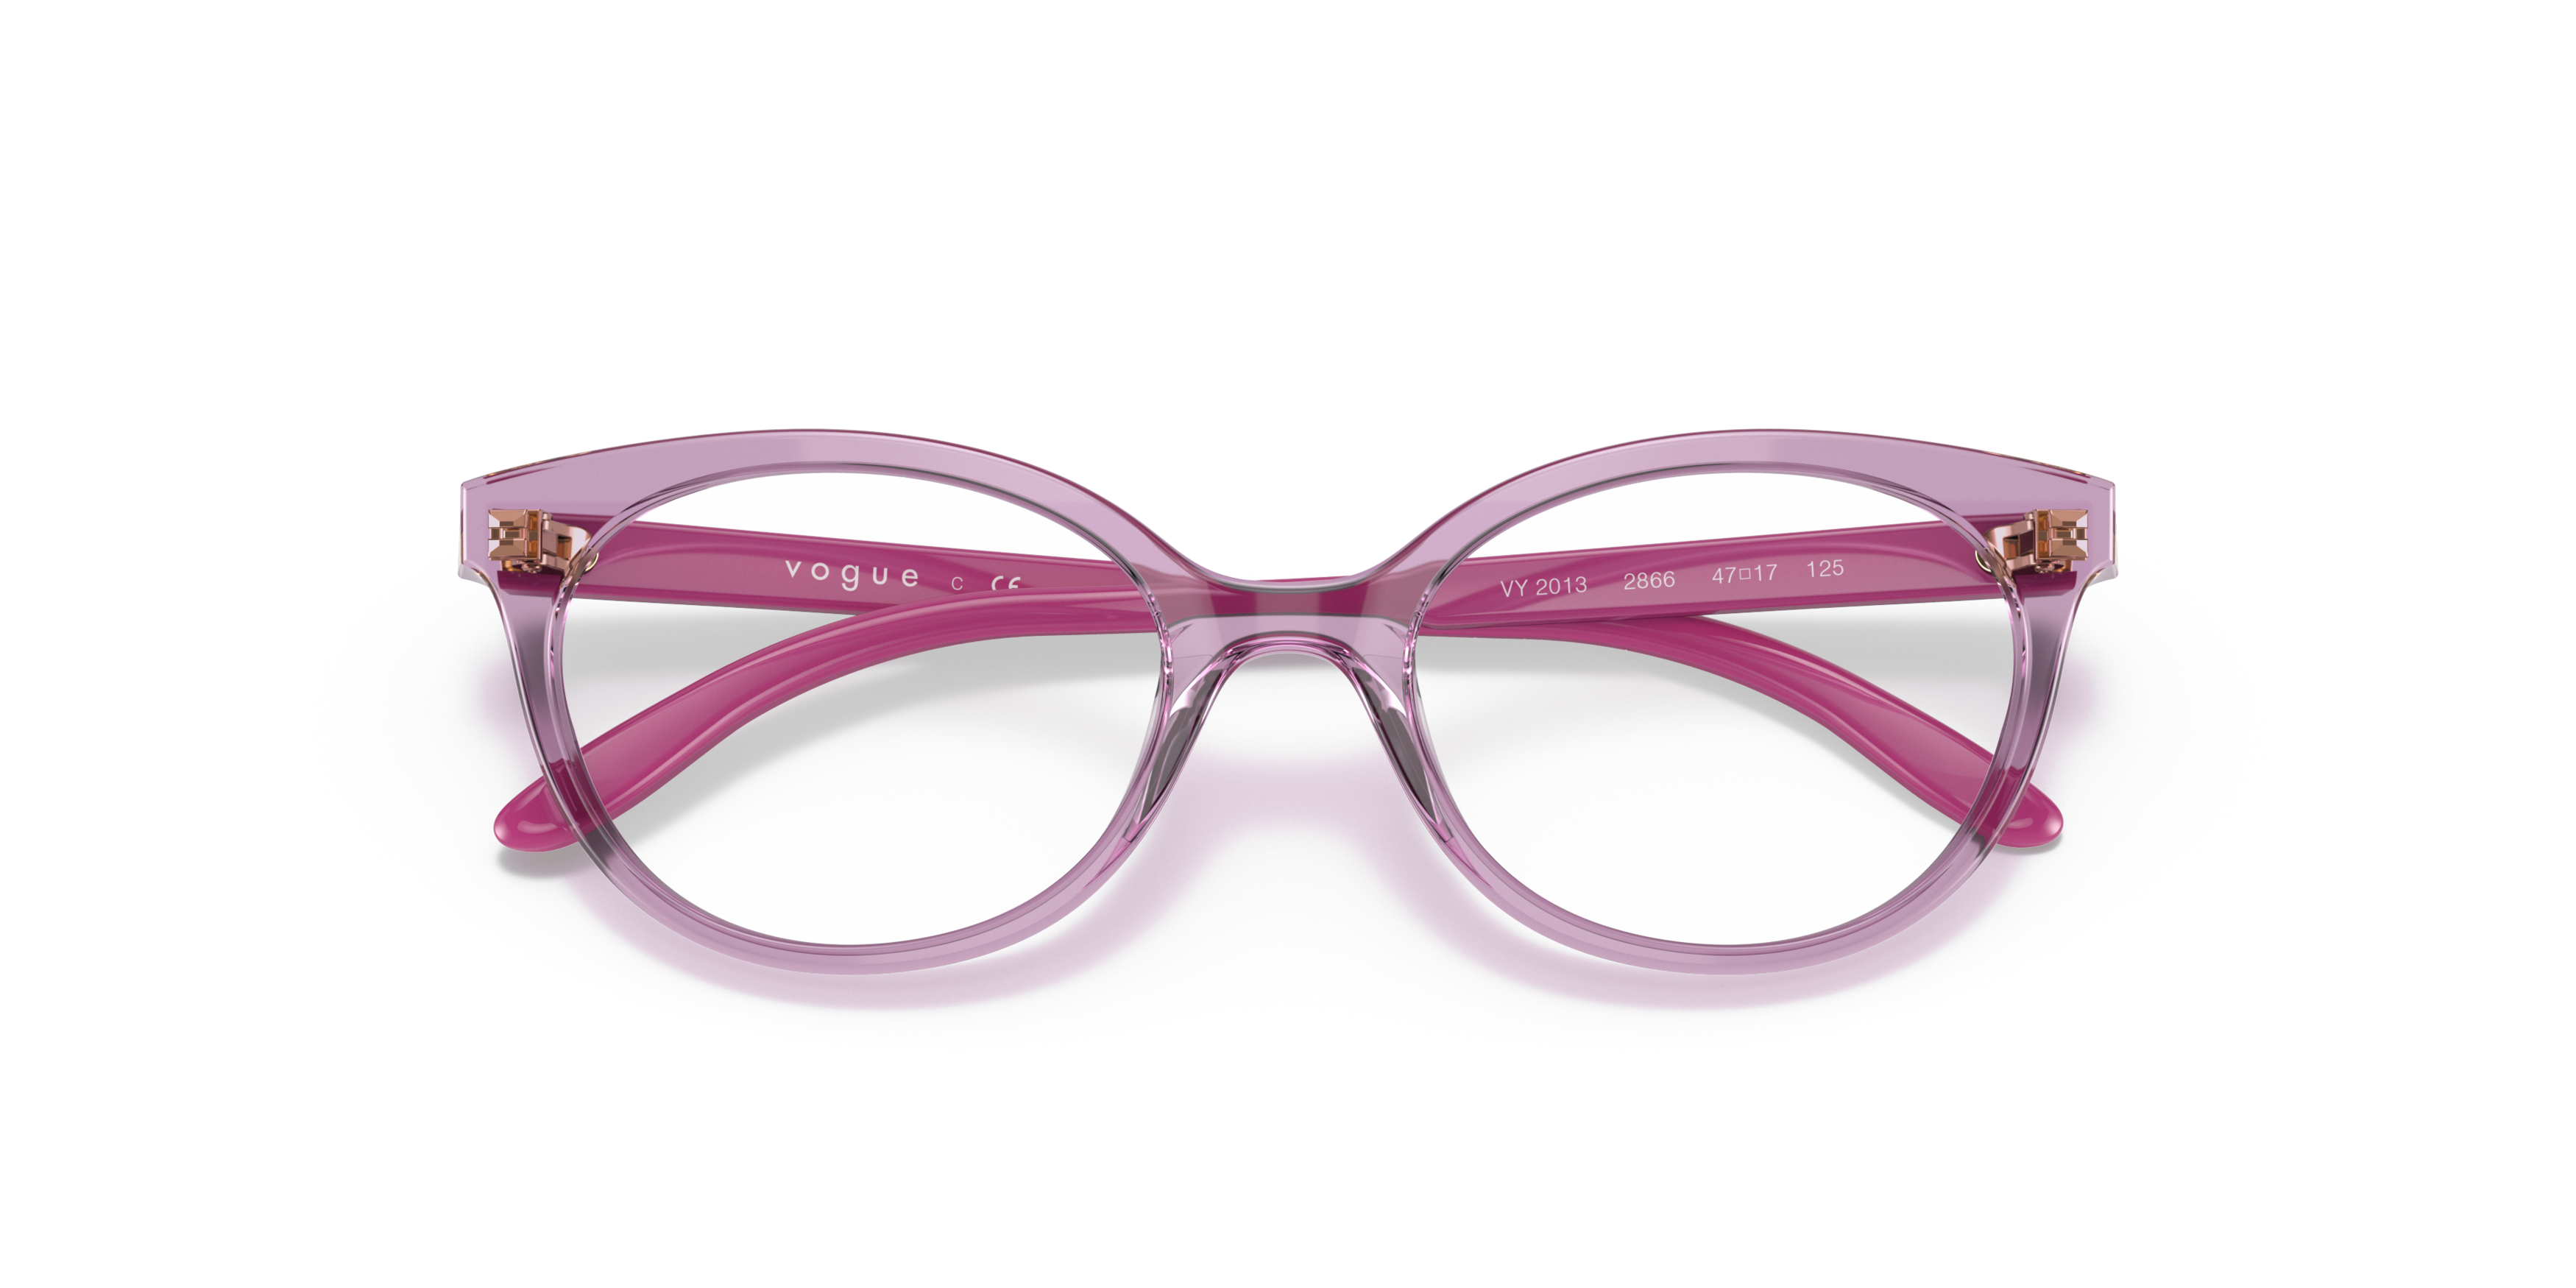 Folded Vogue Kids VY 2013 (2866) Glasses Transparent / Pink